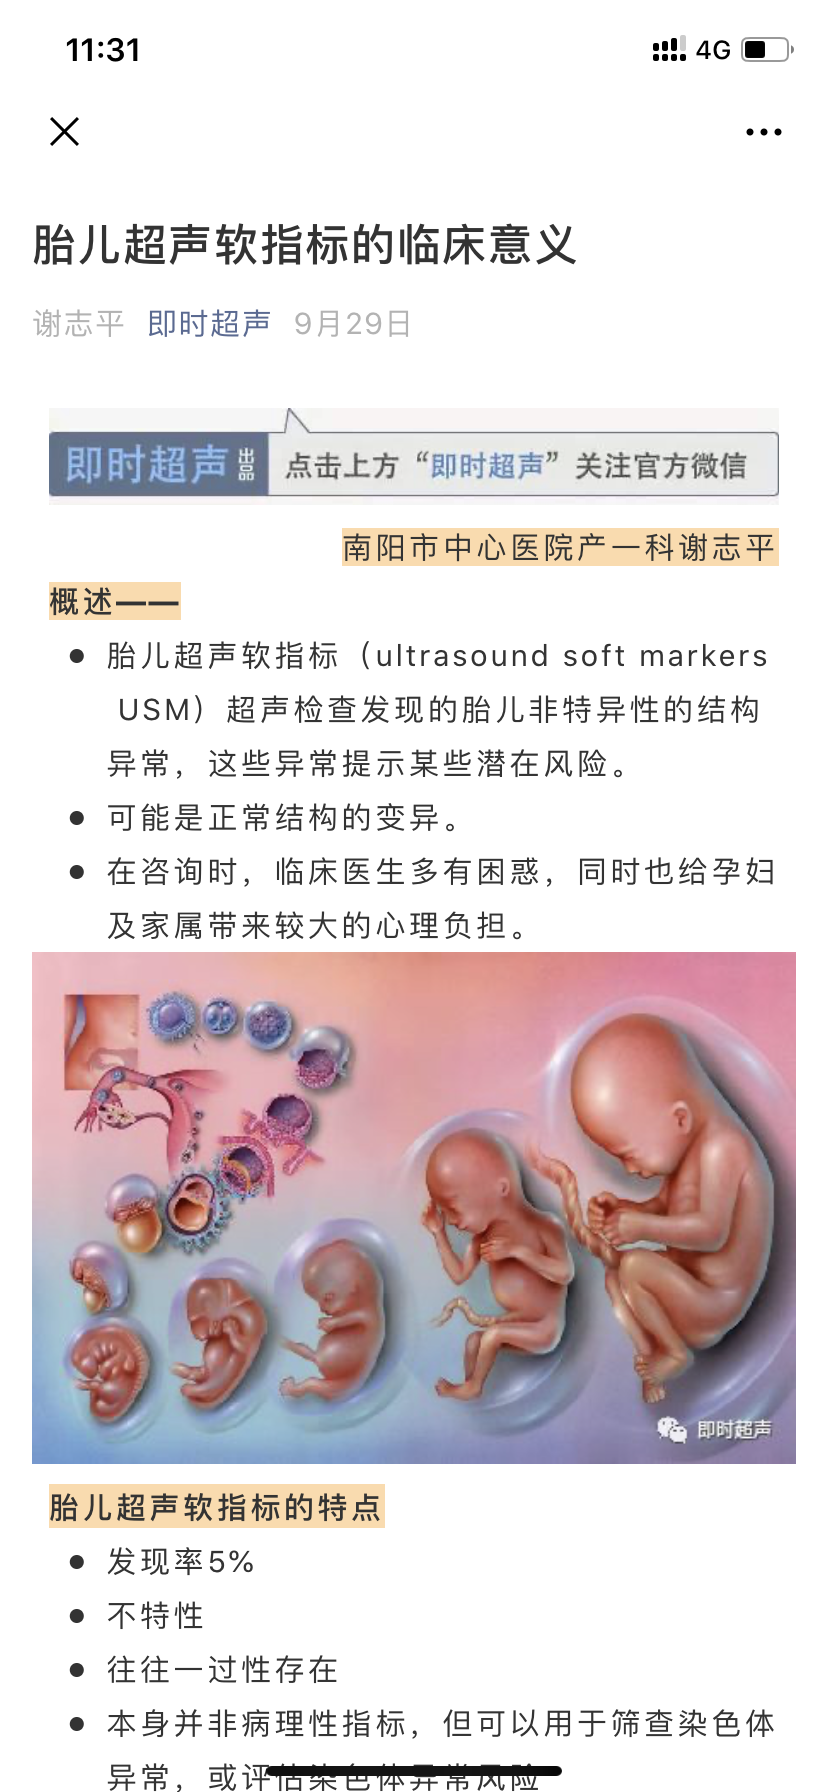 胎儿期肾积水 